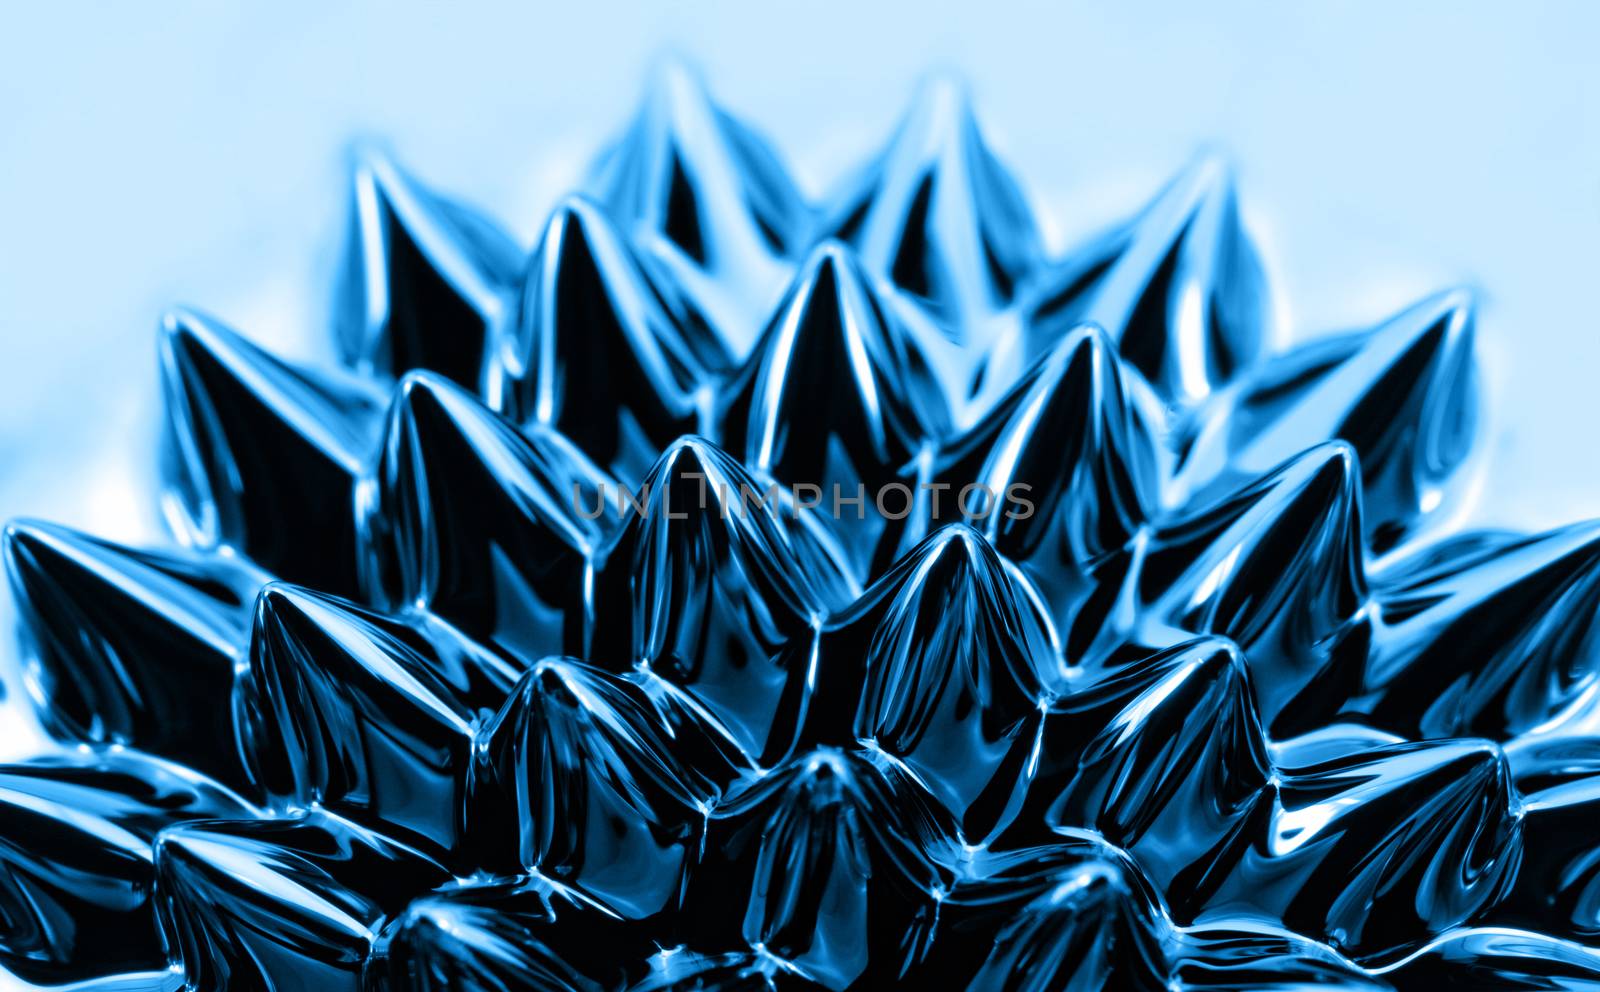 Ferrofluid by Nneirda